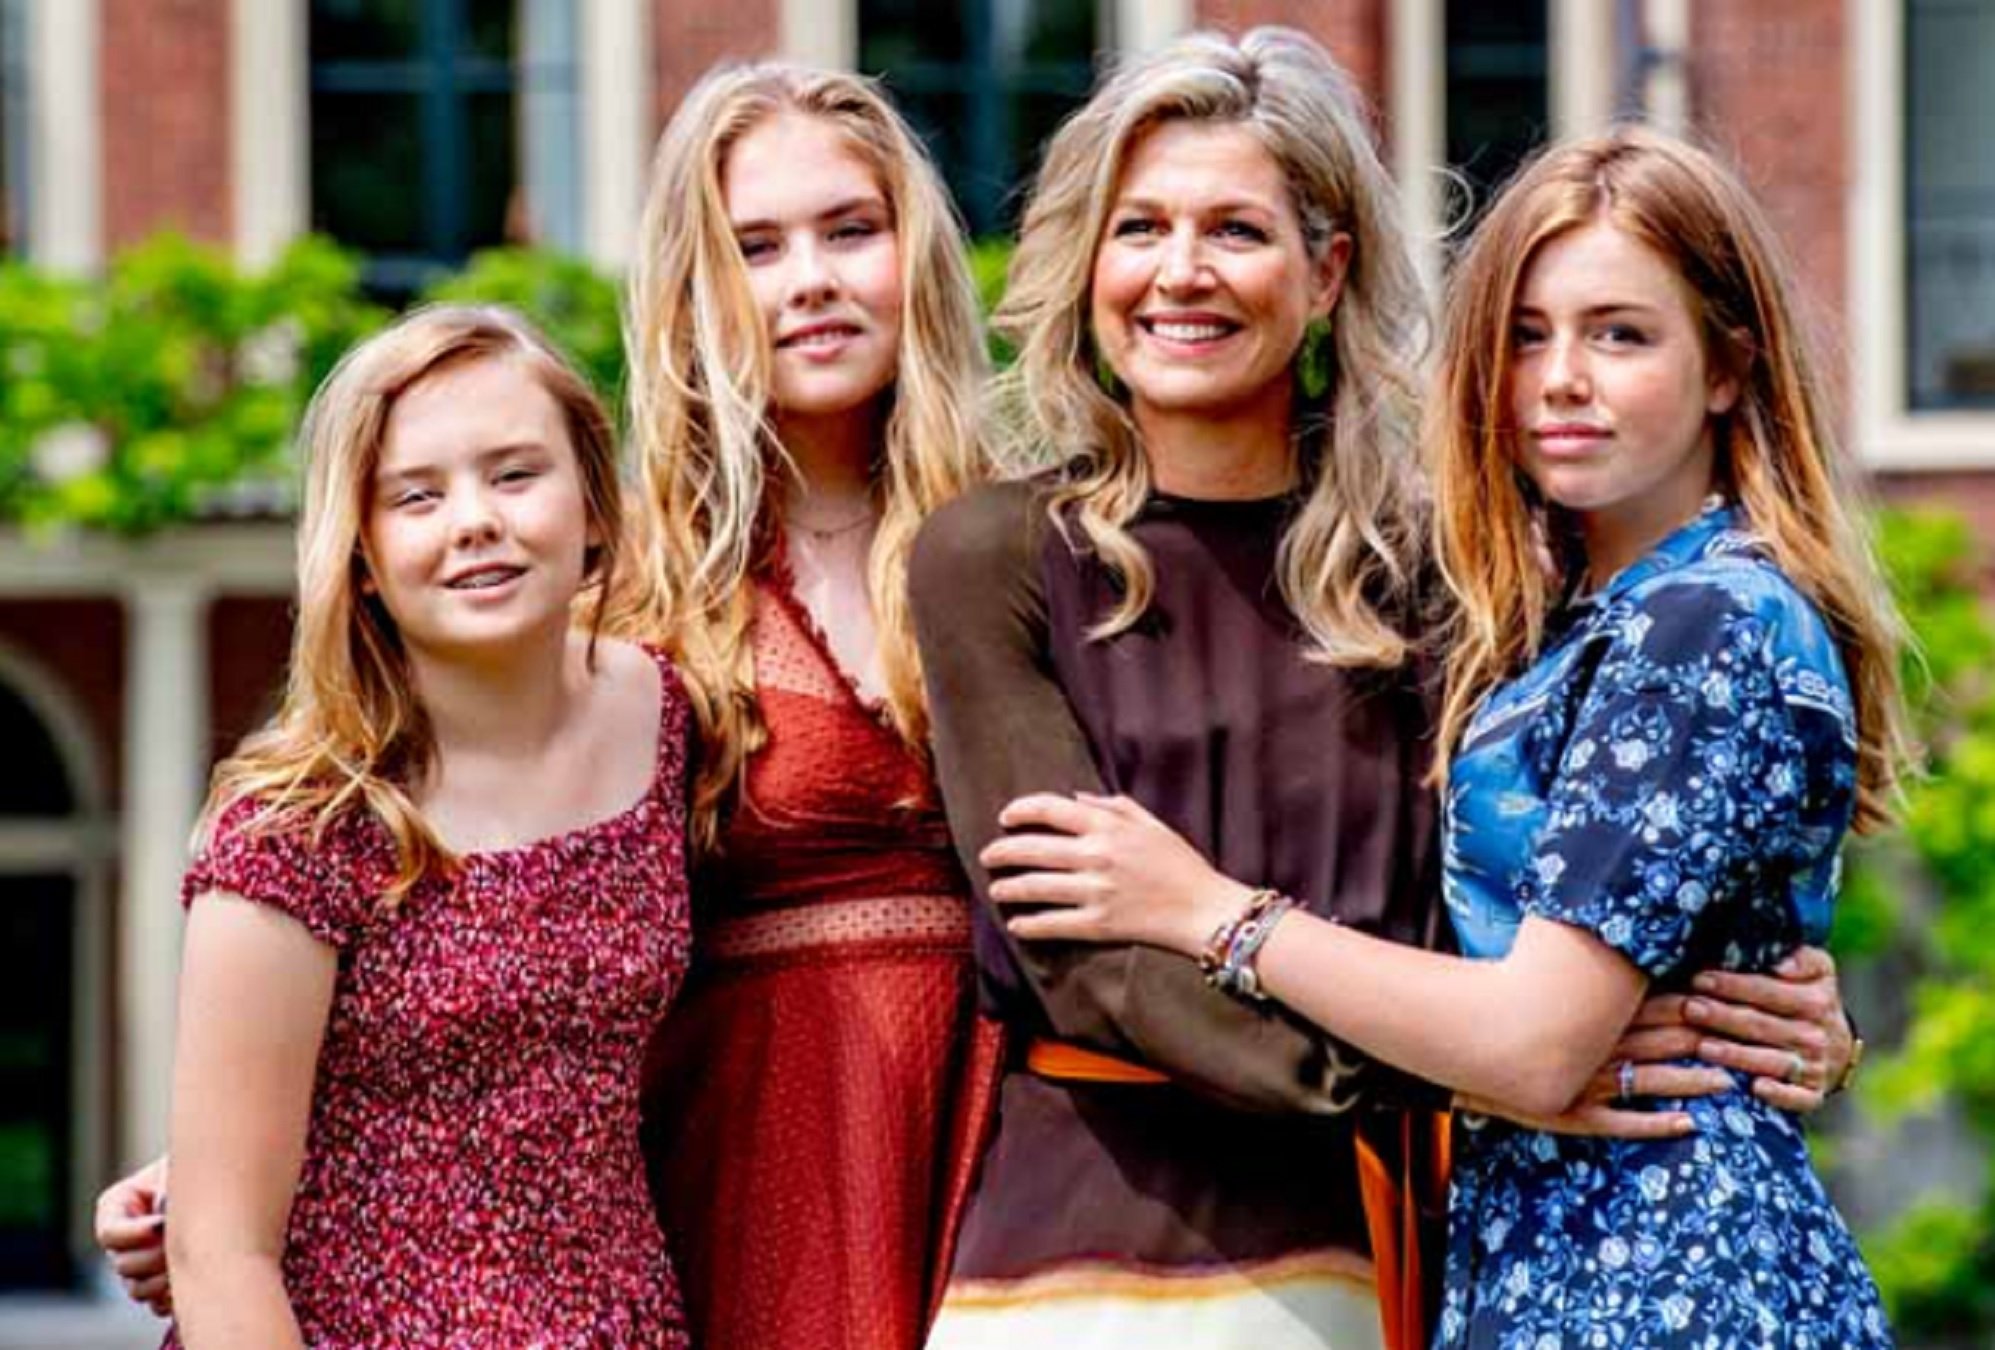 Máxima de Holanda y sus tres hijas Amalia, Alexia y Ariane   GTRES